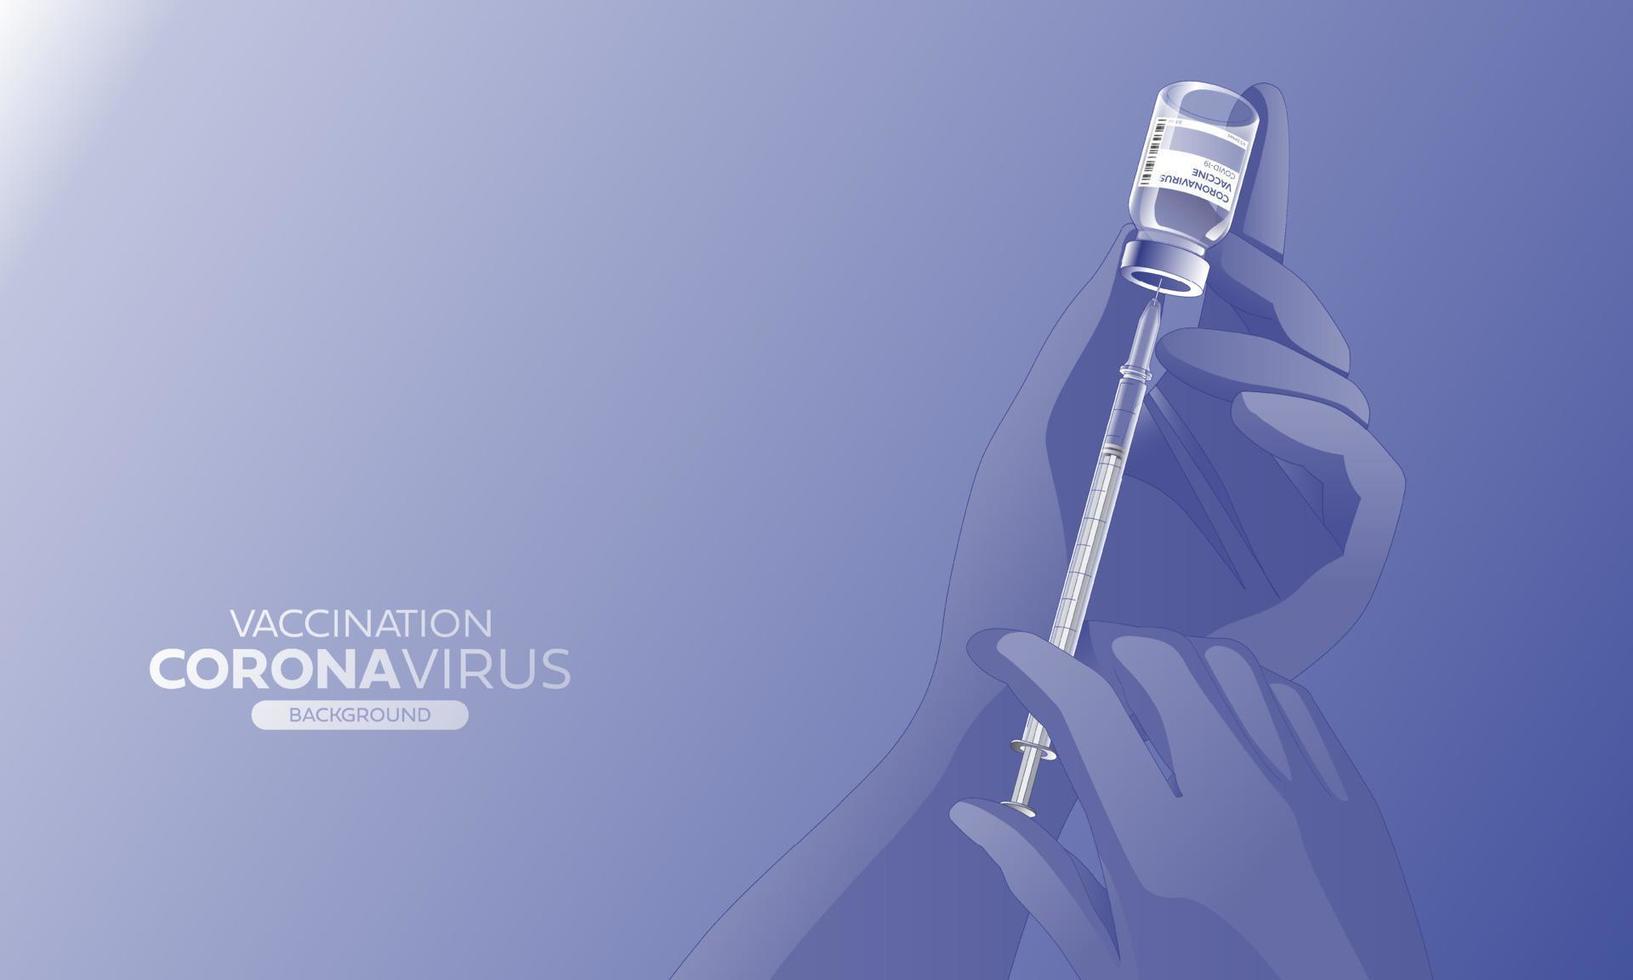 creatief ontwerp voor coronavirus vaccin banier achtergrond. covid-19 corona virus vaccinatie met vaccin fles en injectiespuit injectie gereedschap voor covid19 immunisatie behandeling. vector illustratie.